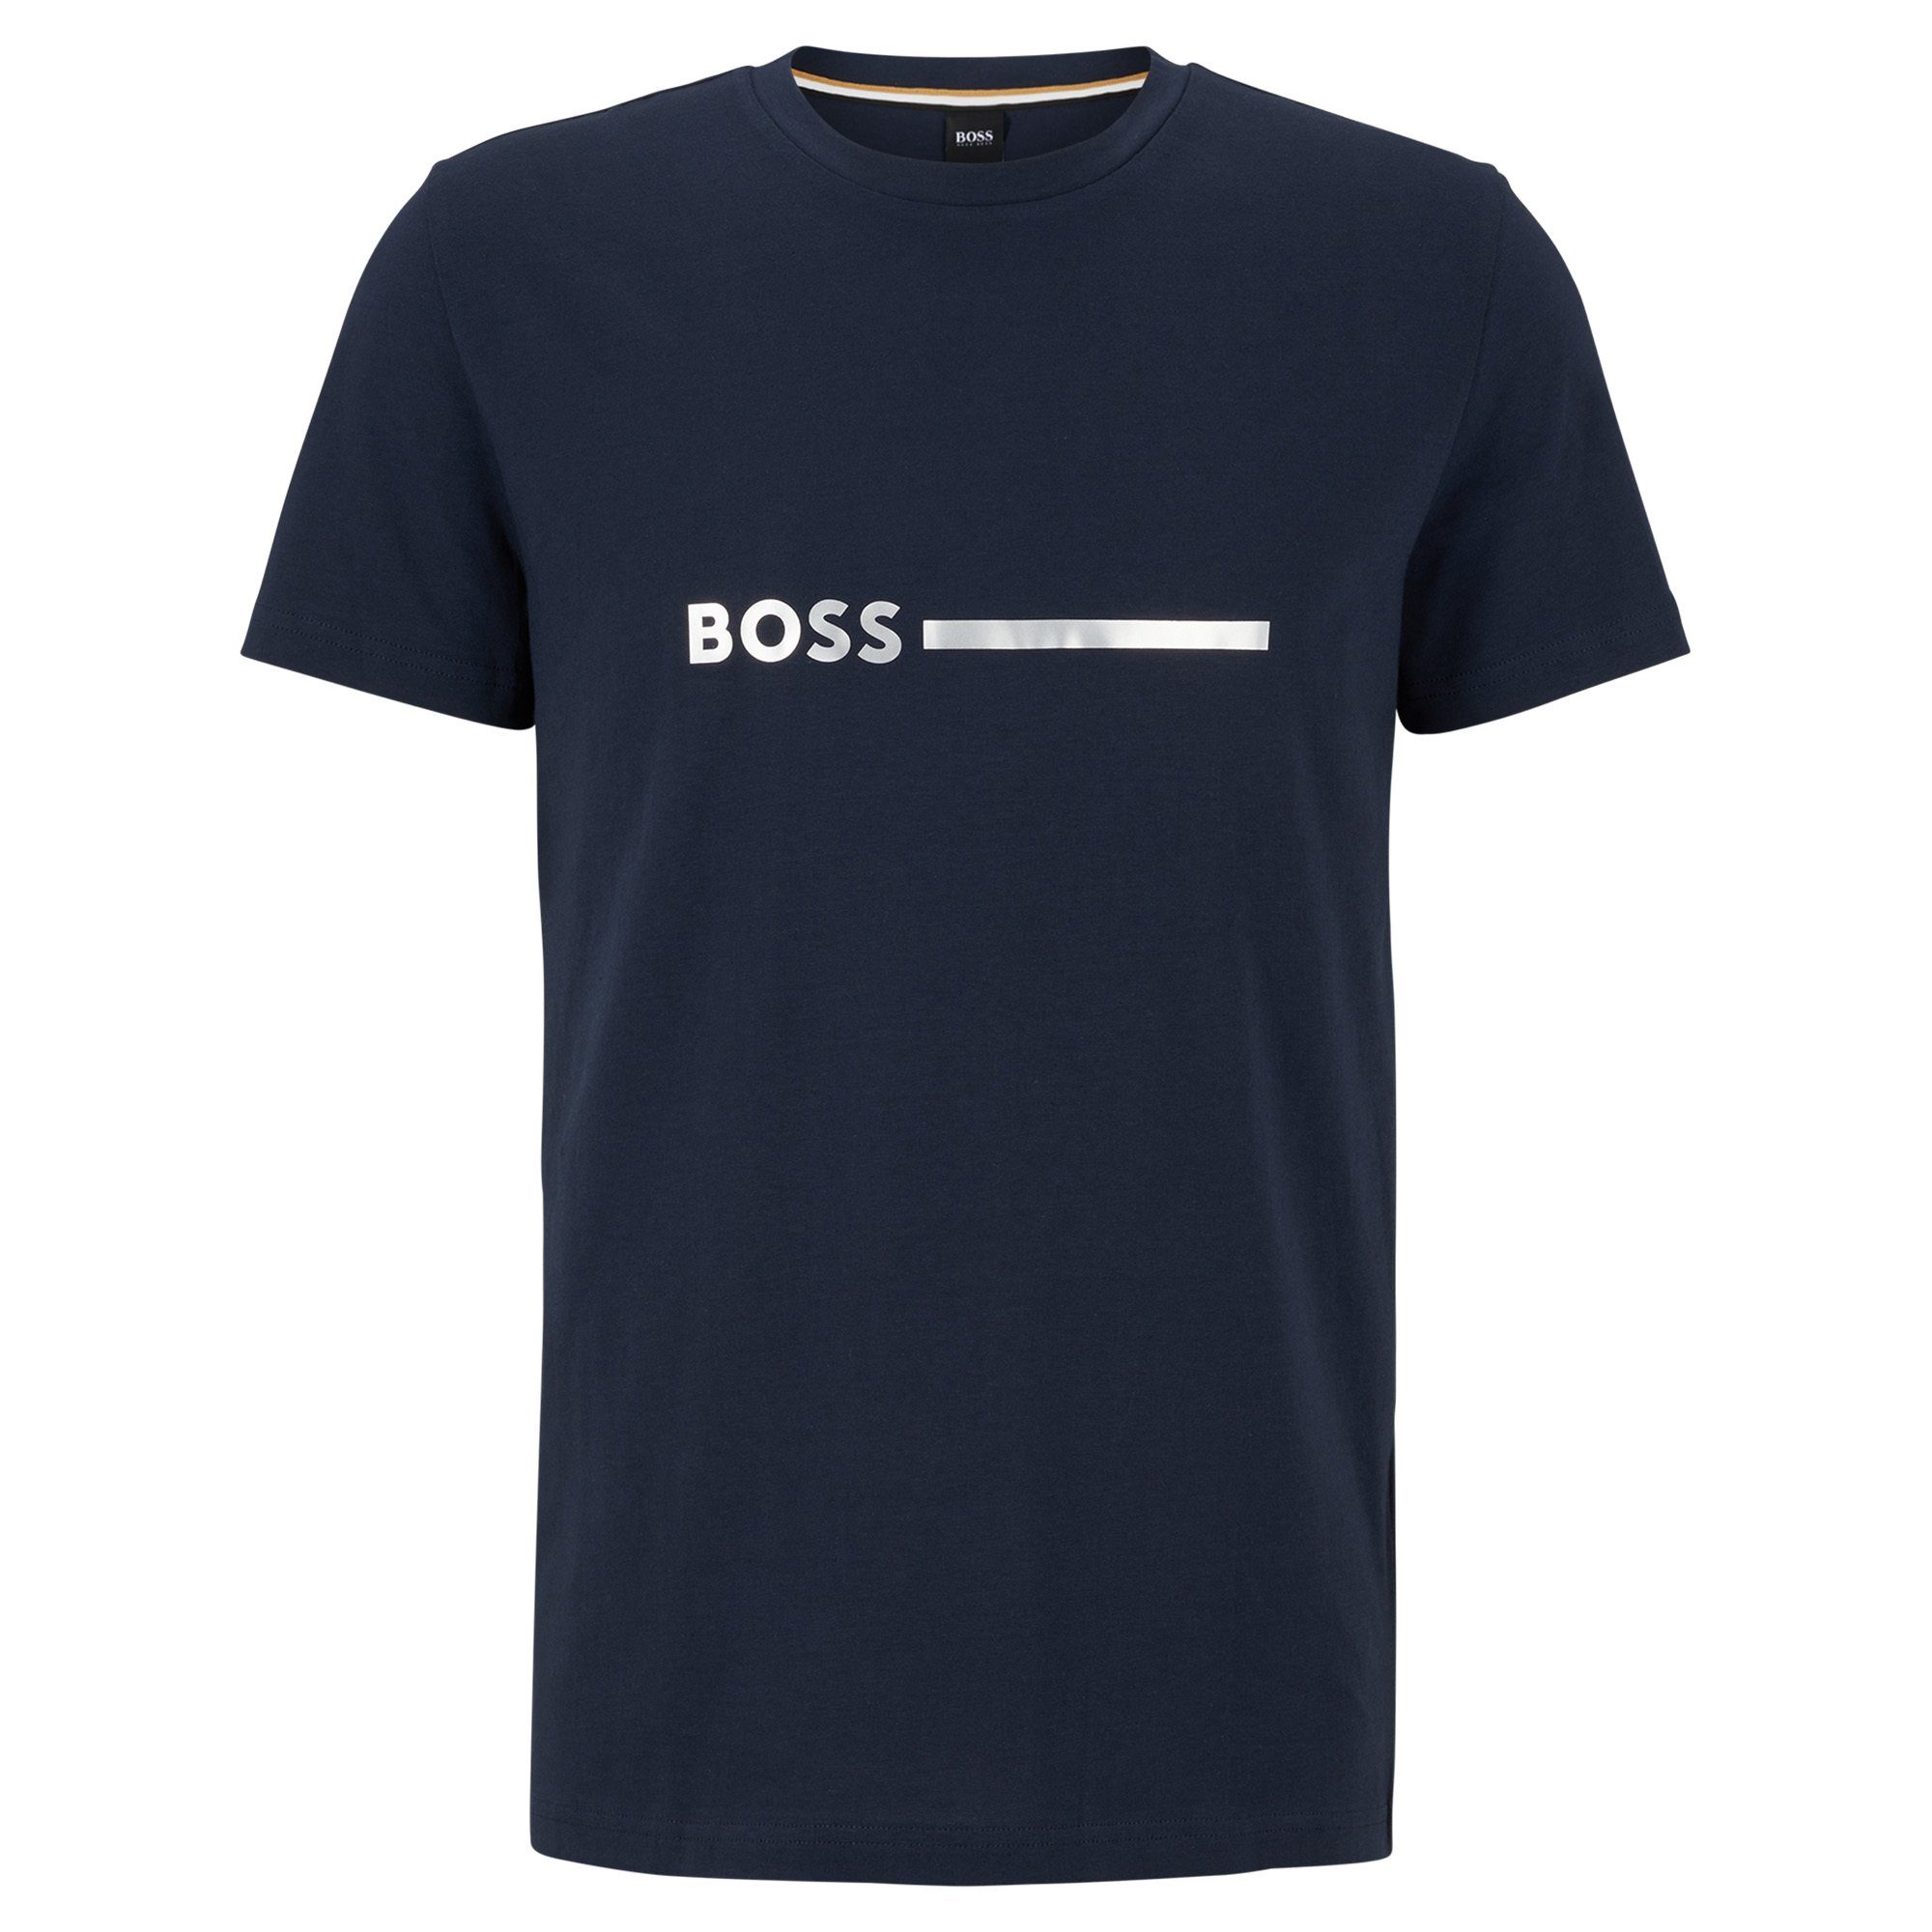 BOSS T-Shirt Herren T-Shirt - Special, Rundhals, Kurzarm Dunkelblau | T-Shirts